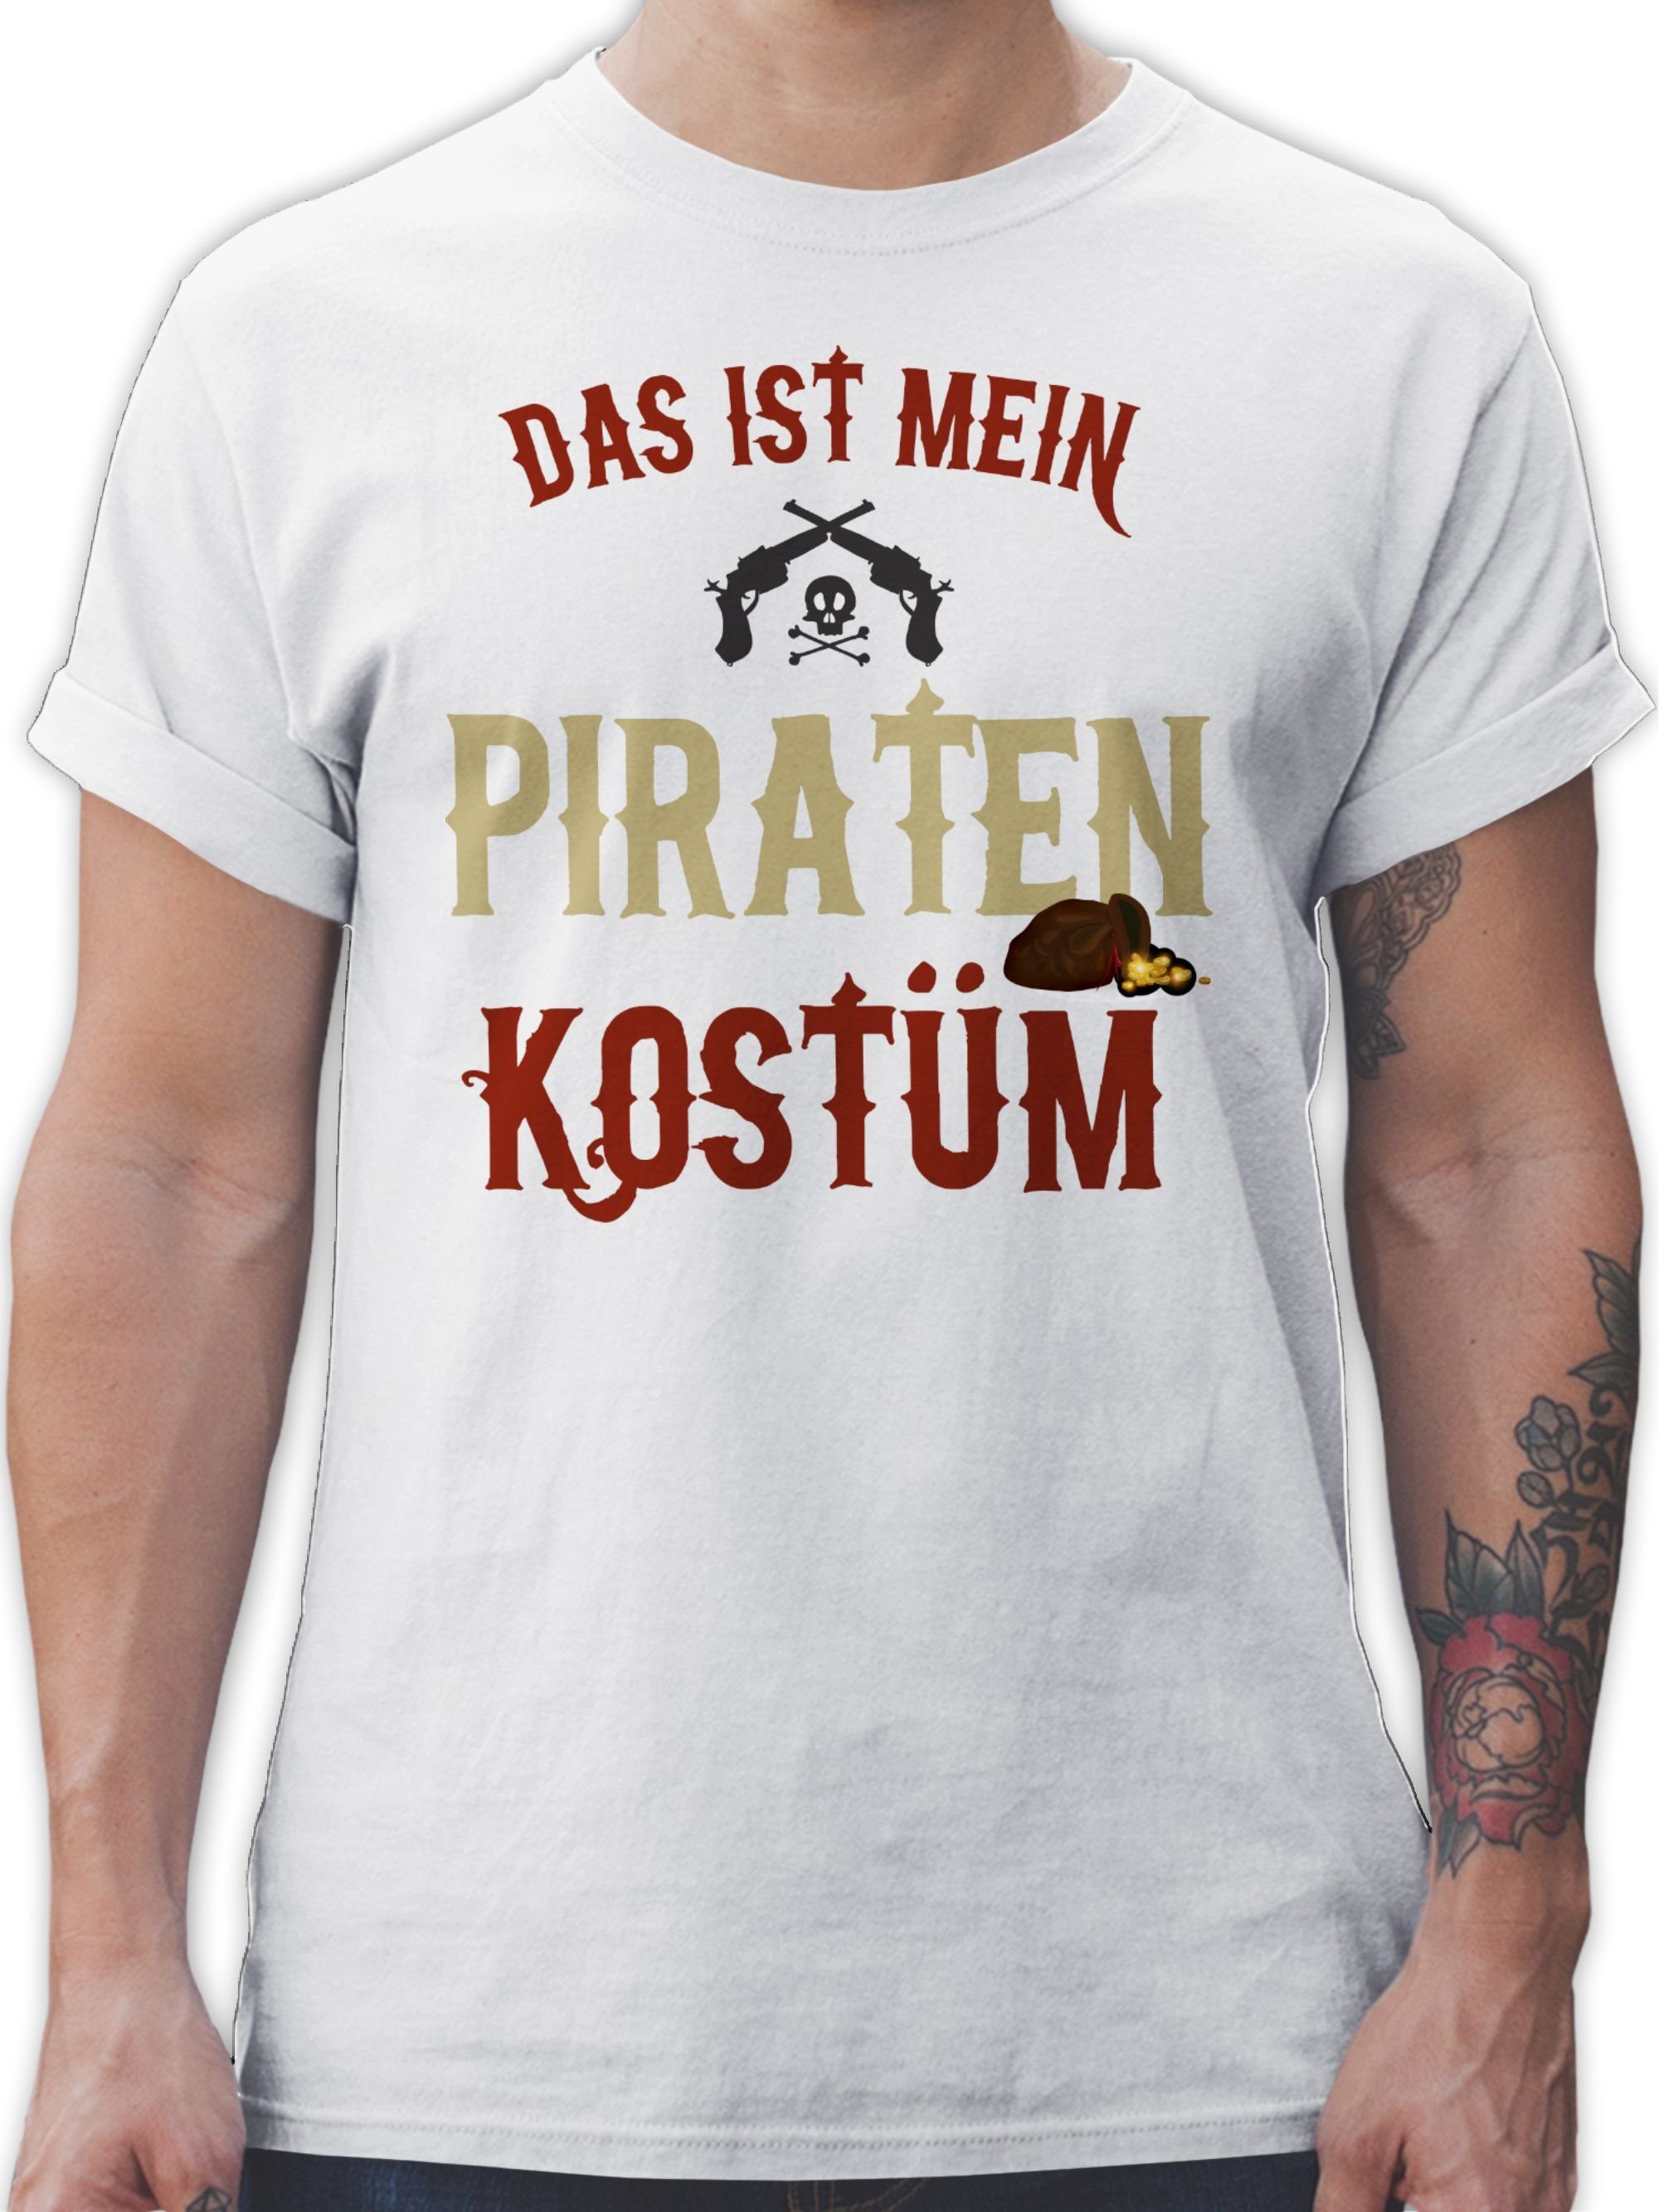 Pirat Piraten ist mein Das Karneval Weiß Outfit Kostüm T-Shirt Piratenkostüm - 02 Shirtracer verkleidet